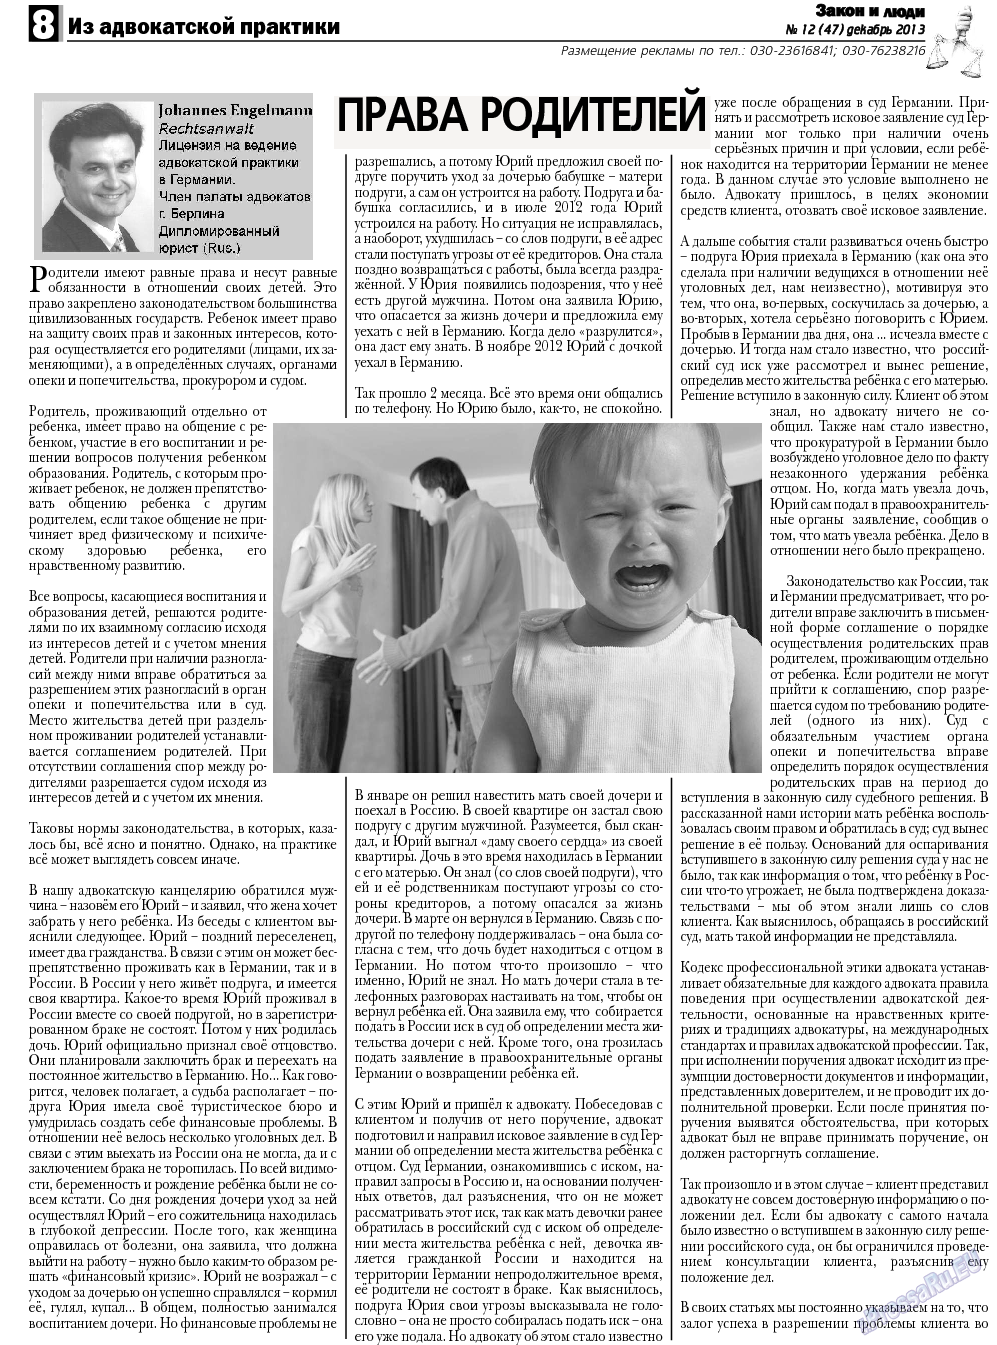 Закон и люди, газета. 2013 №12 стр.8